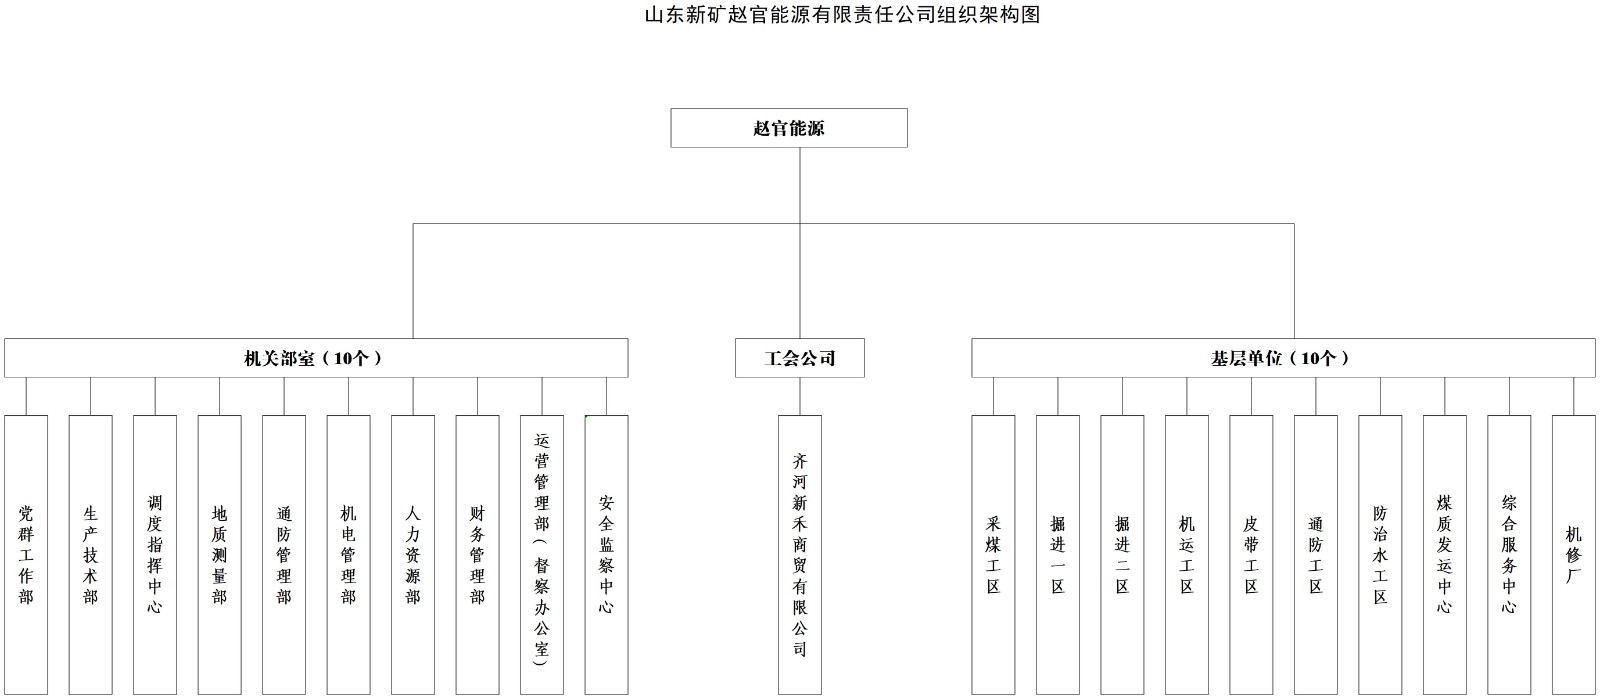 赵官能源组织架构图